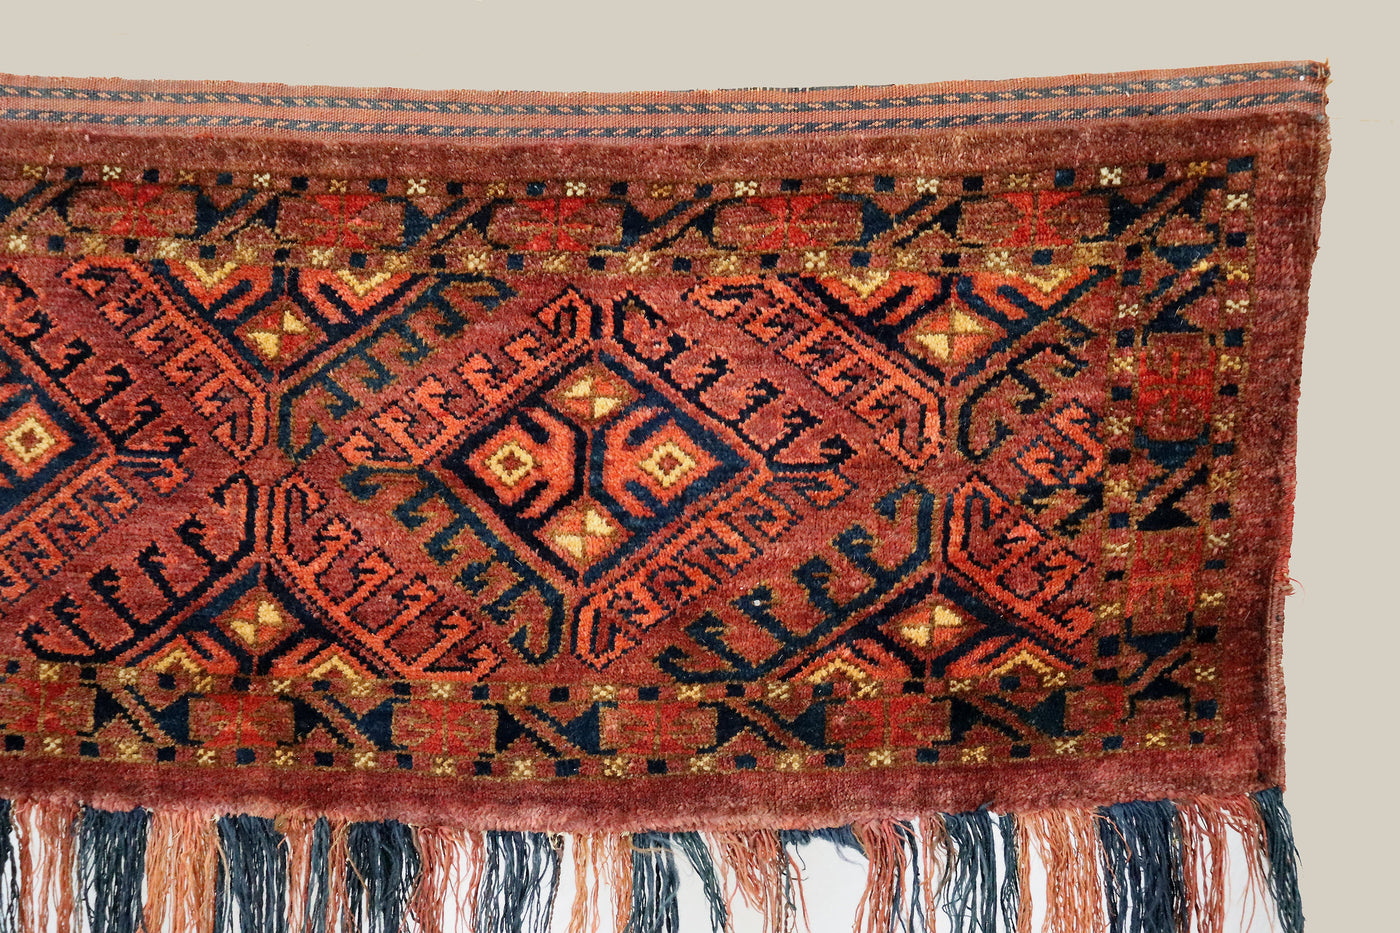 150x60 cm Antike handgeknüpfte Orientalische turkmenische Jumod Nomaden Teppich Zelttasche torba jaller Nr:22/eb1 Teppiche Orientsbazar   